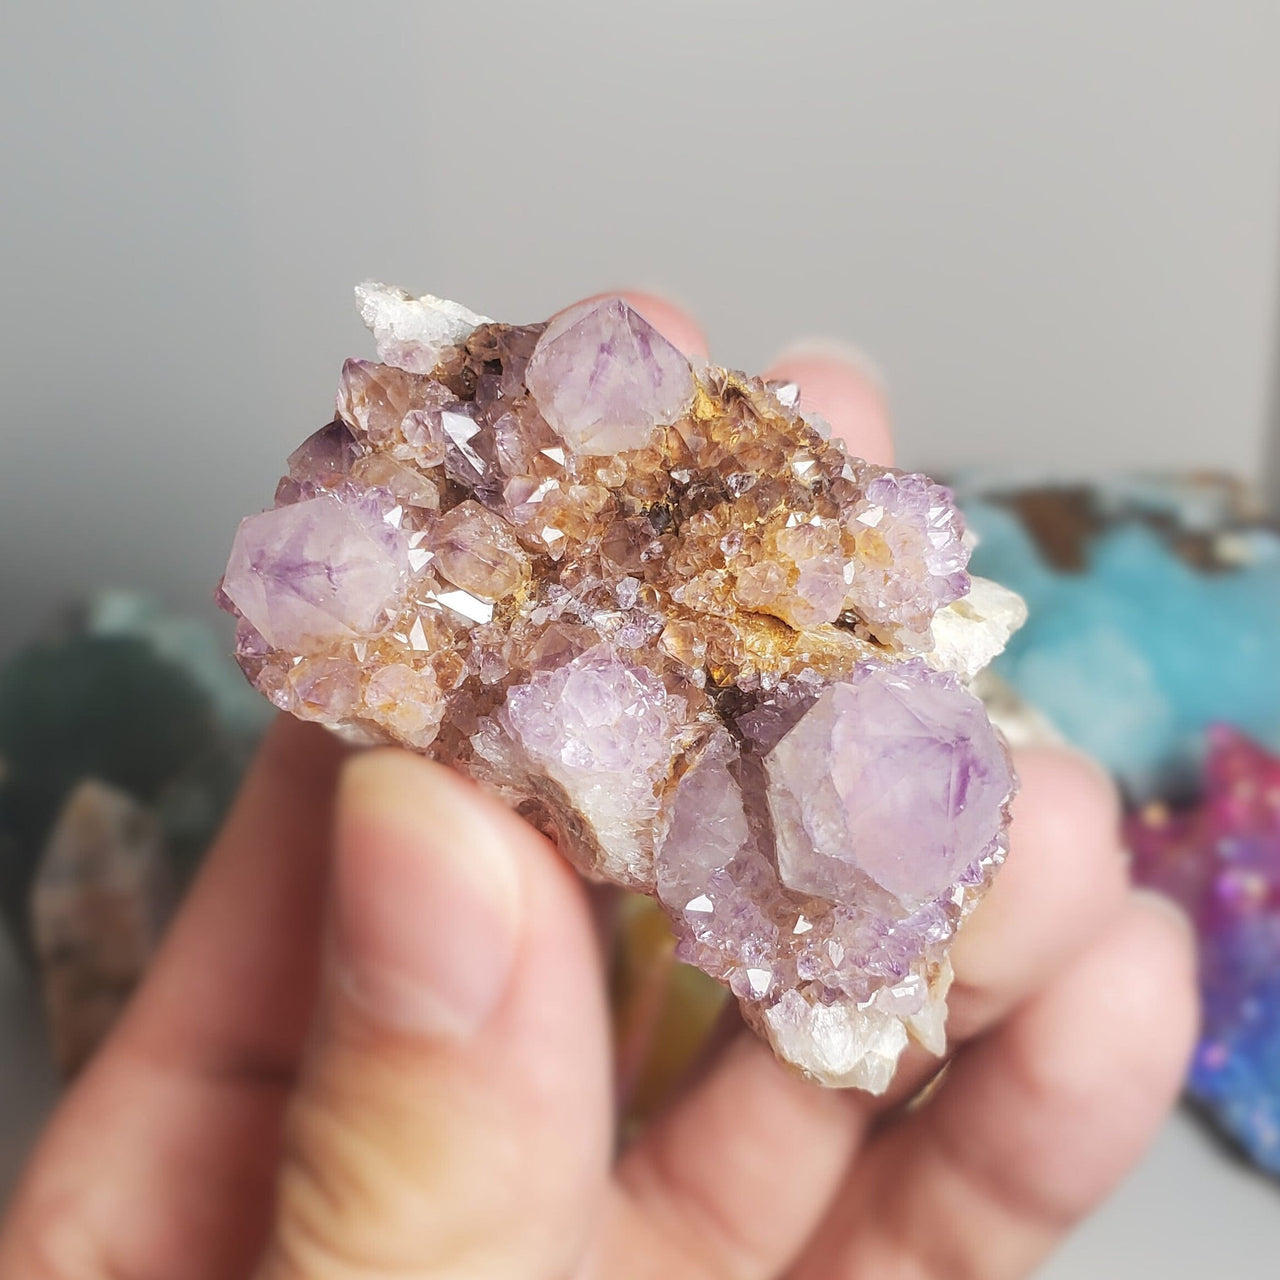 Purple Spirit Quartz Specimen with hematite inclusions, Authentic Amethyst Cactus Crystal, Crystal Decor